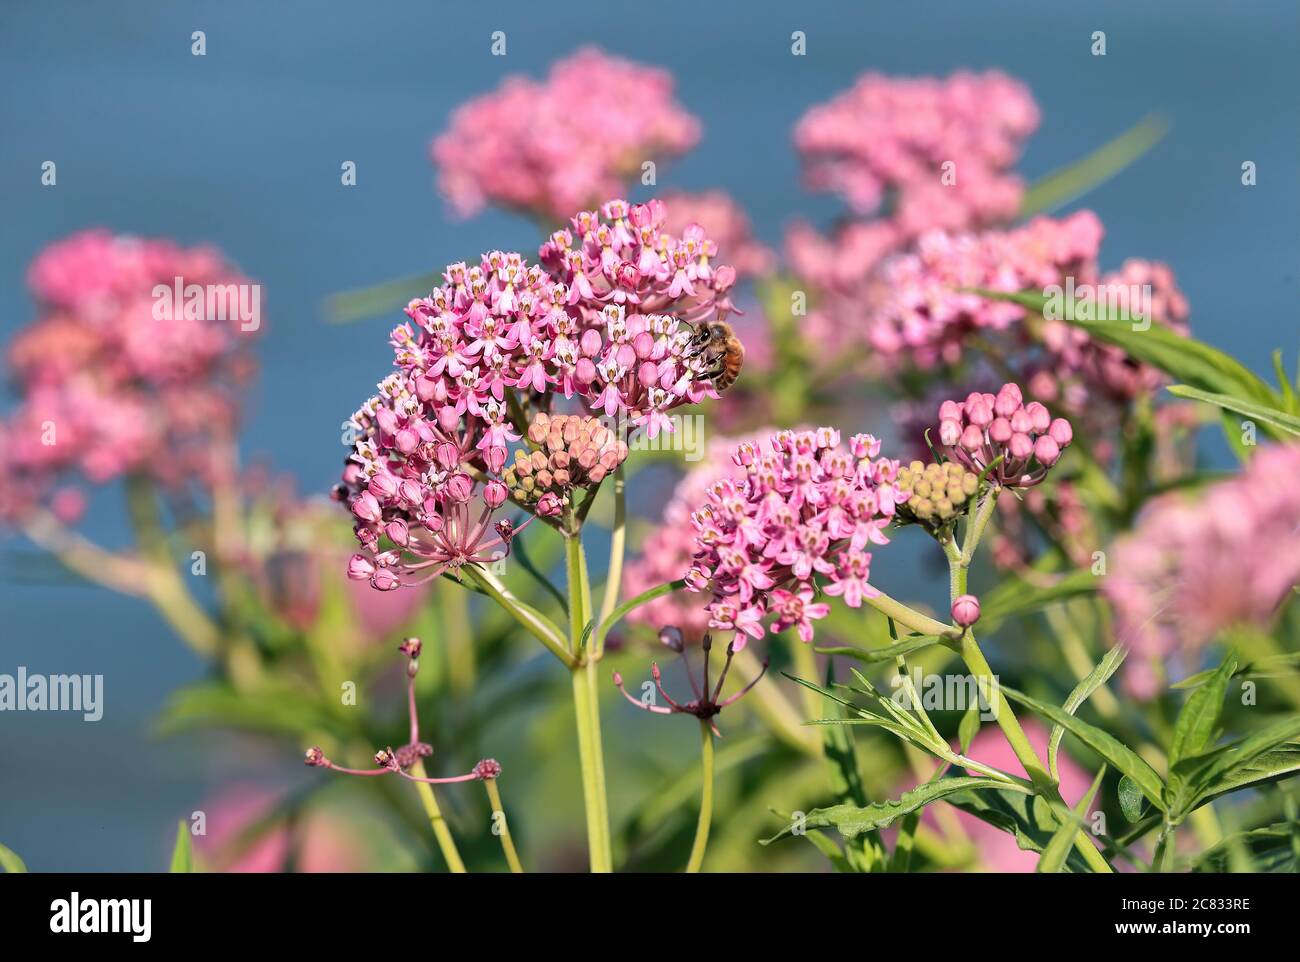 Une plante de l'herbe à poux du marais avec plusieurs grappes de fleurs trouvées par un lac avec une abeille pollinisante. Banque D'Images